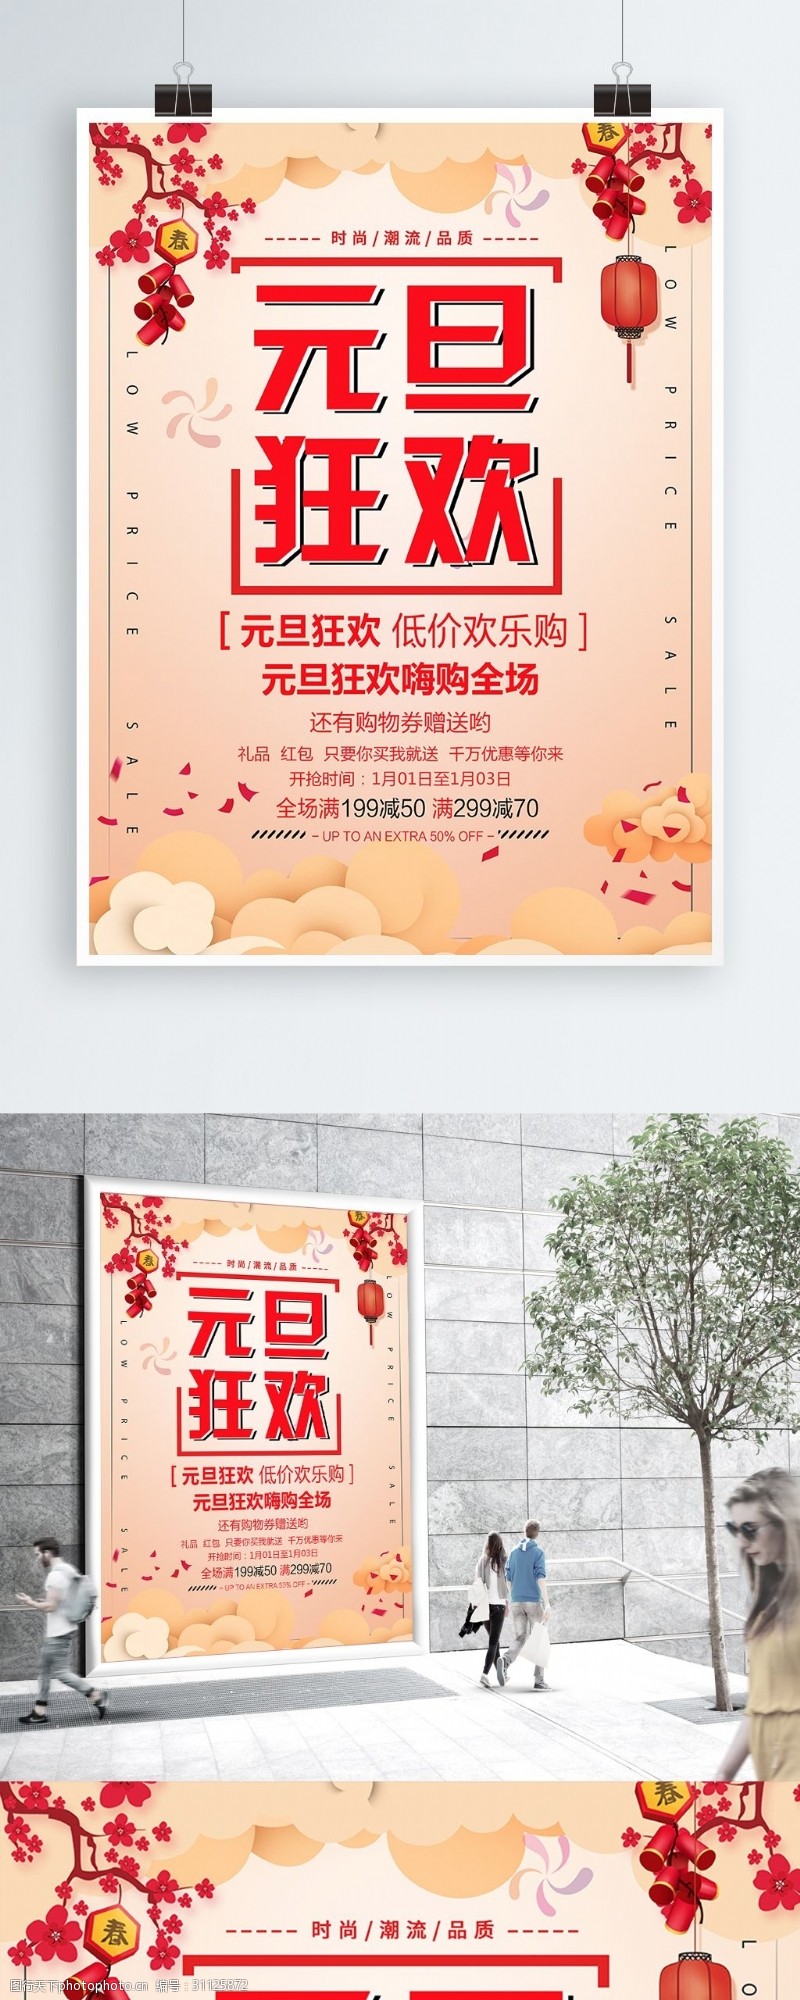 节日优惠2019年猪年元旦促销优惠活动海报